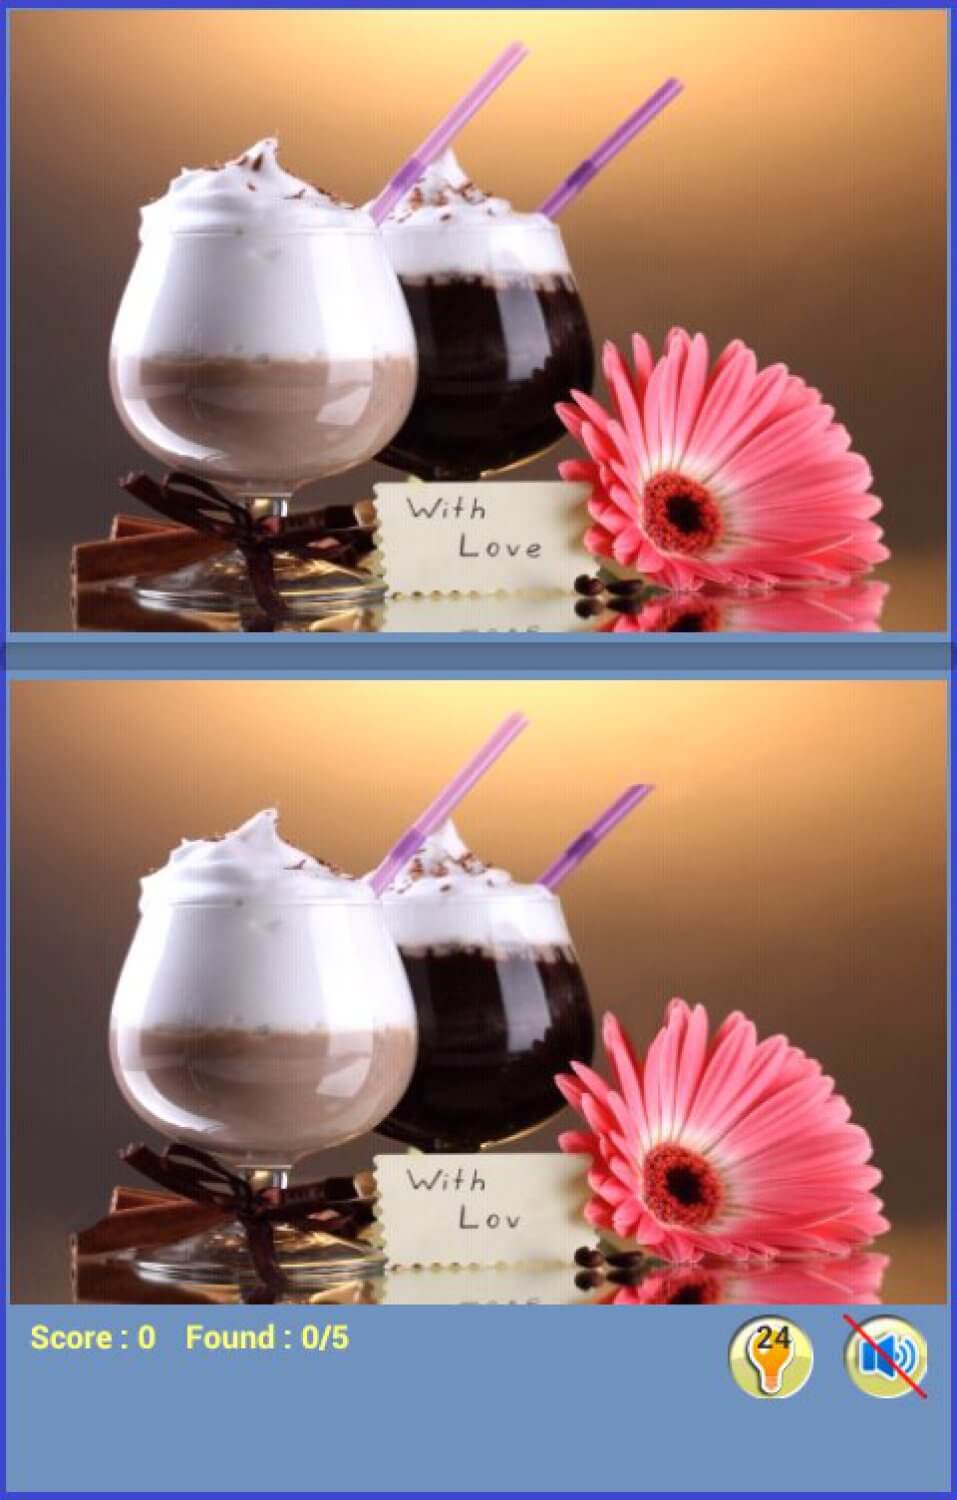 Поиск различий в изображениях десертов. Фото.